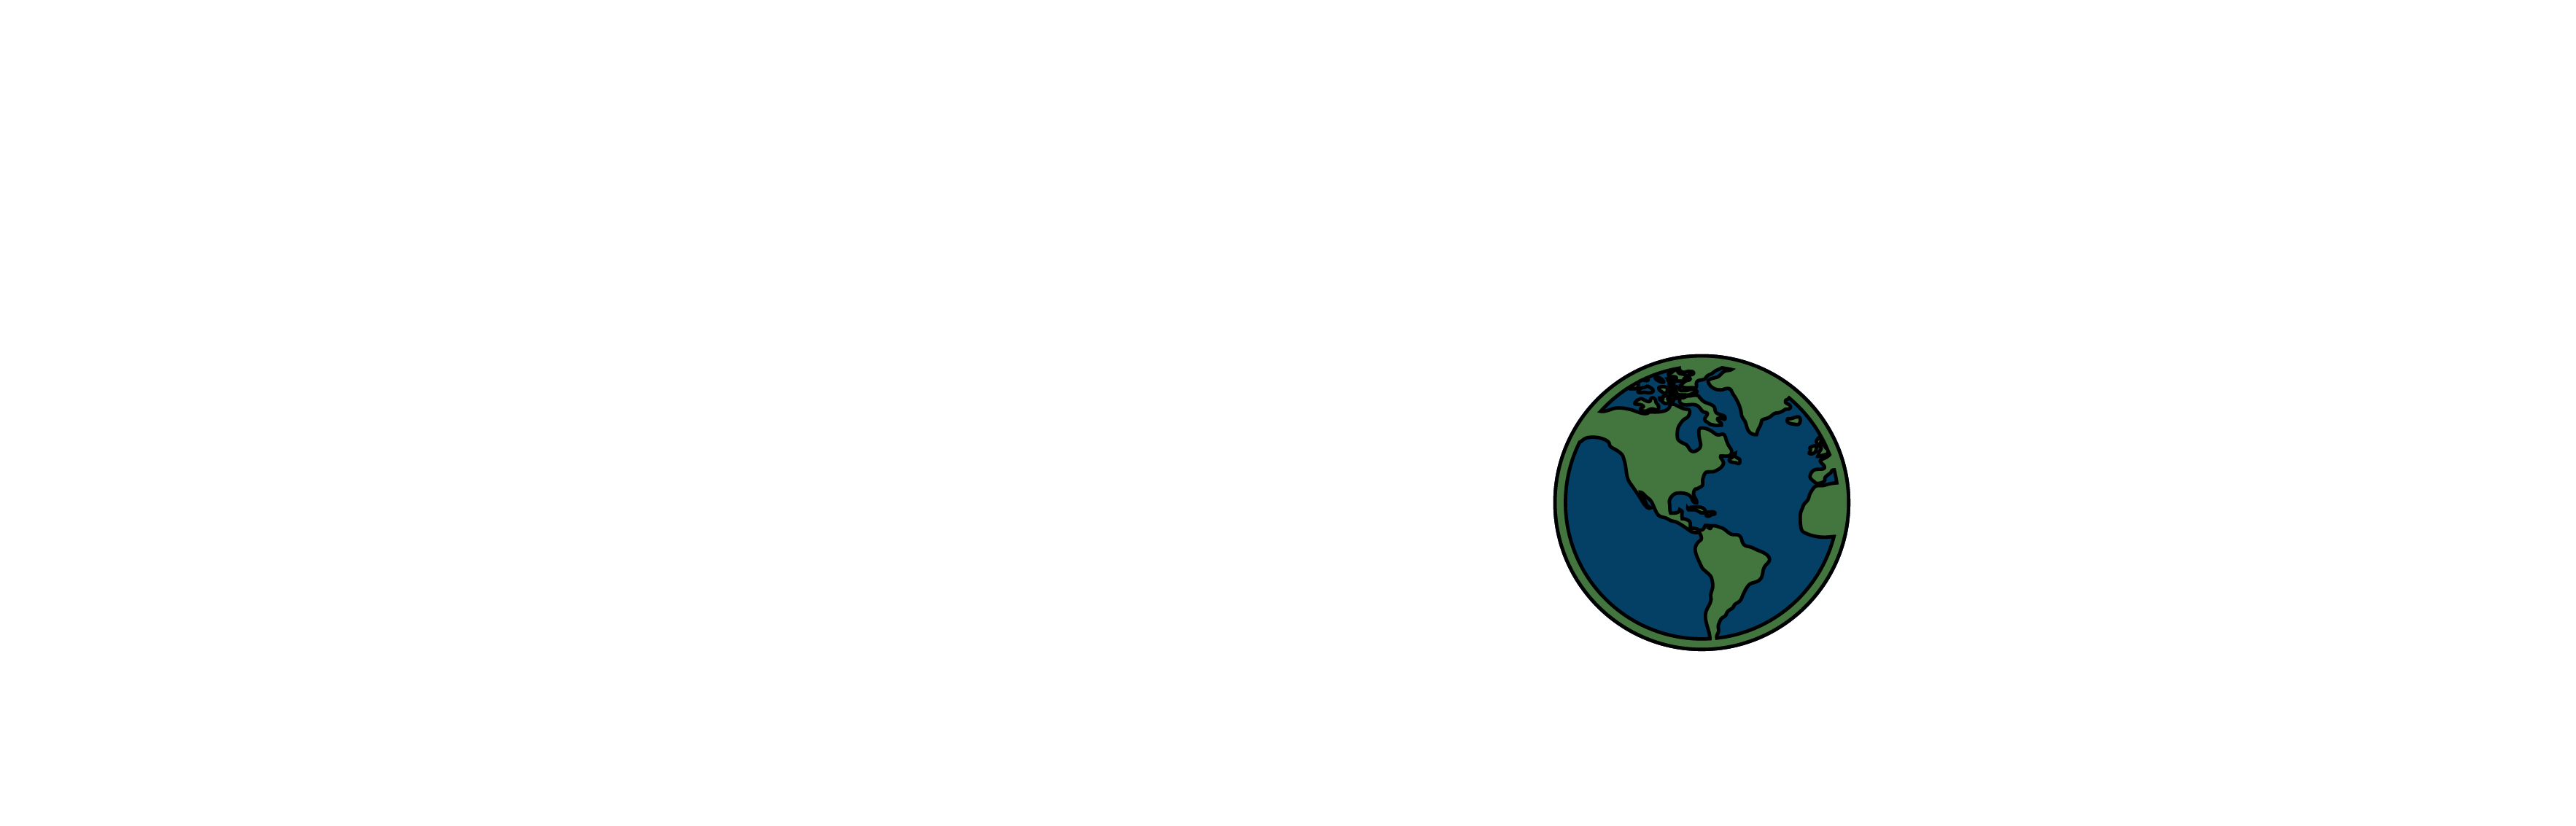 IIFBC Logo - Asset 28@2x2